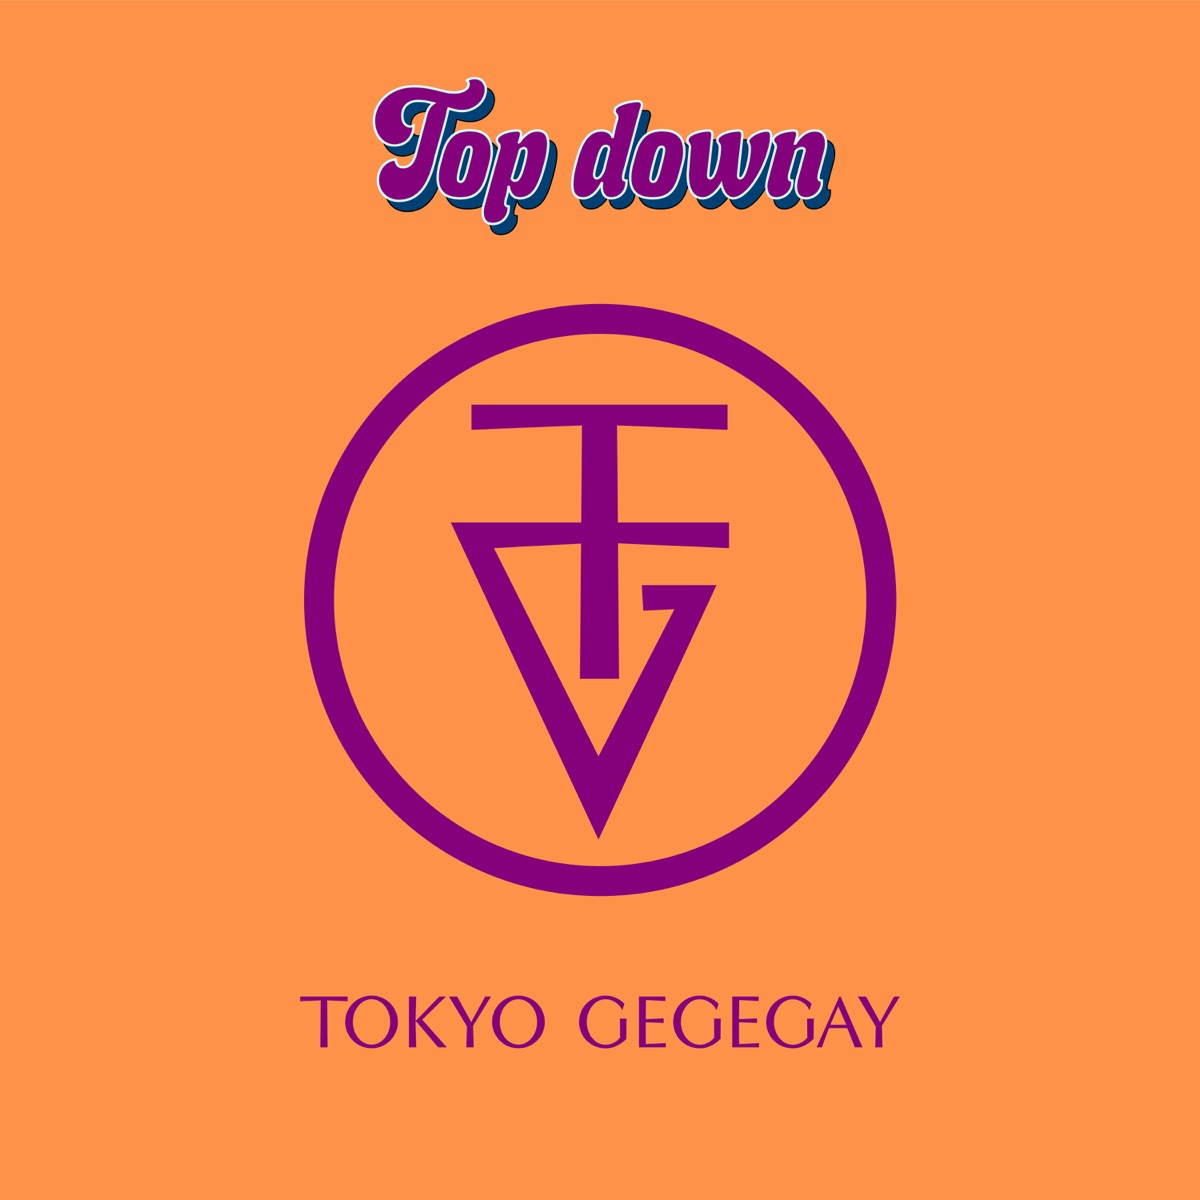 『東京ゲゲゲイ - Top down』収録の『Top down』ジャケット